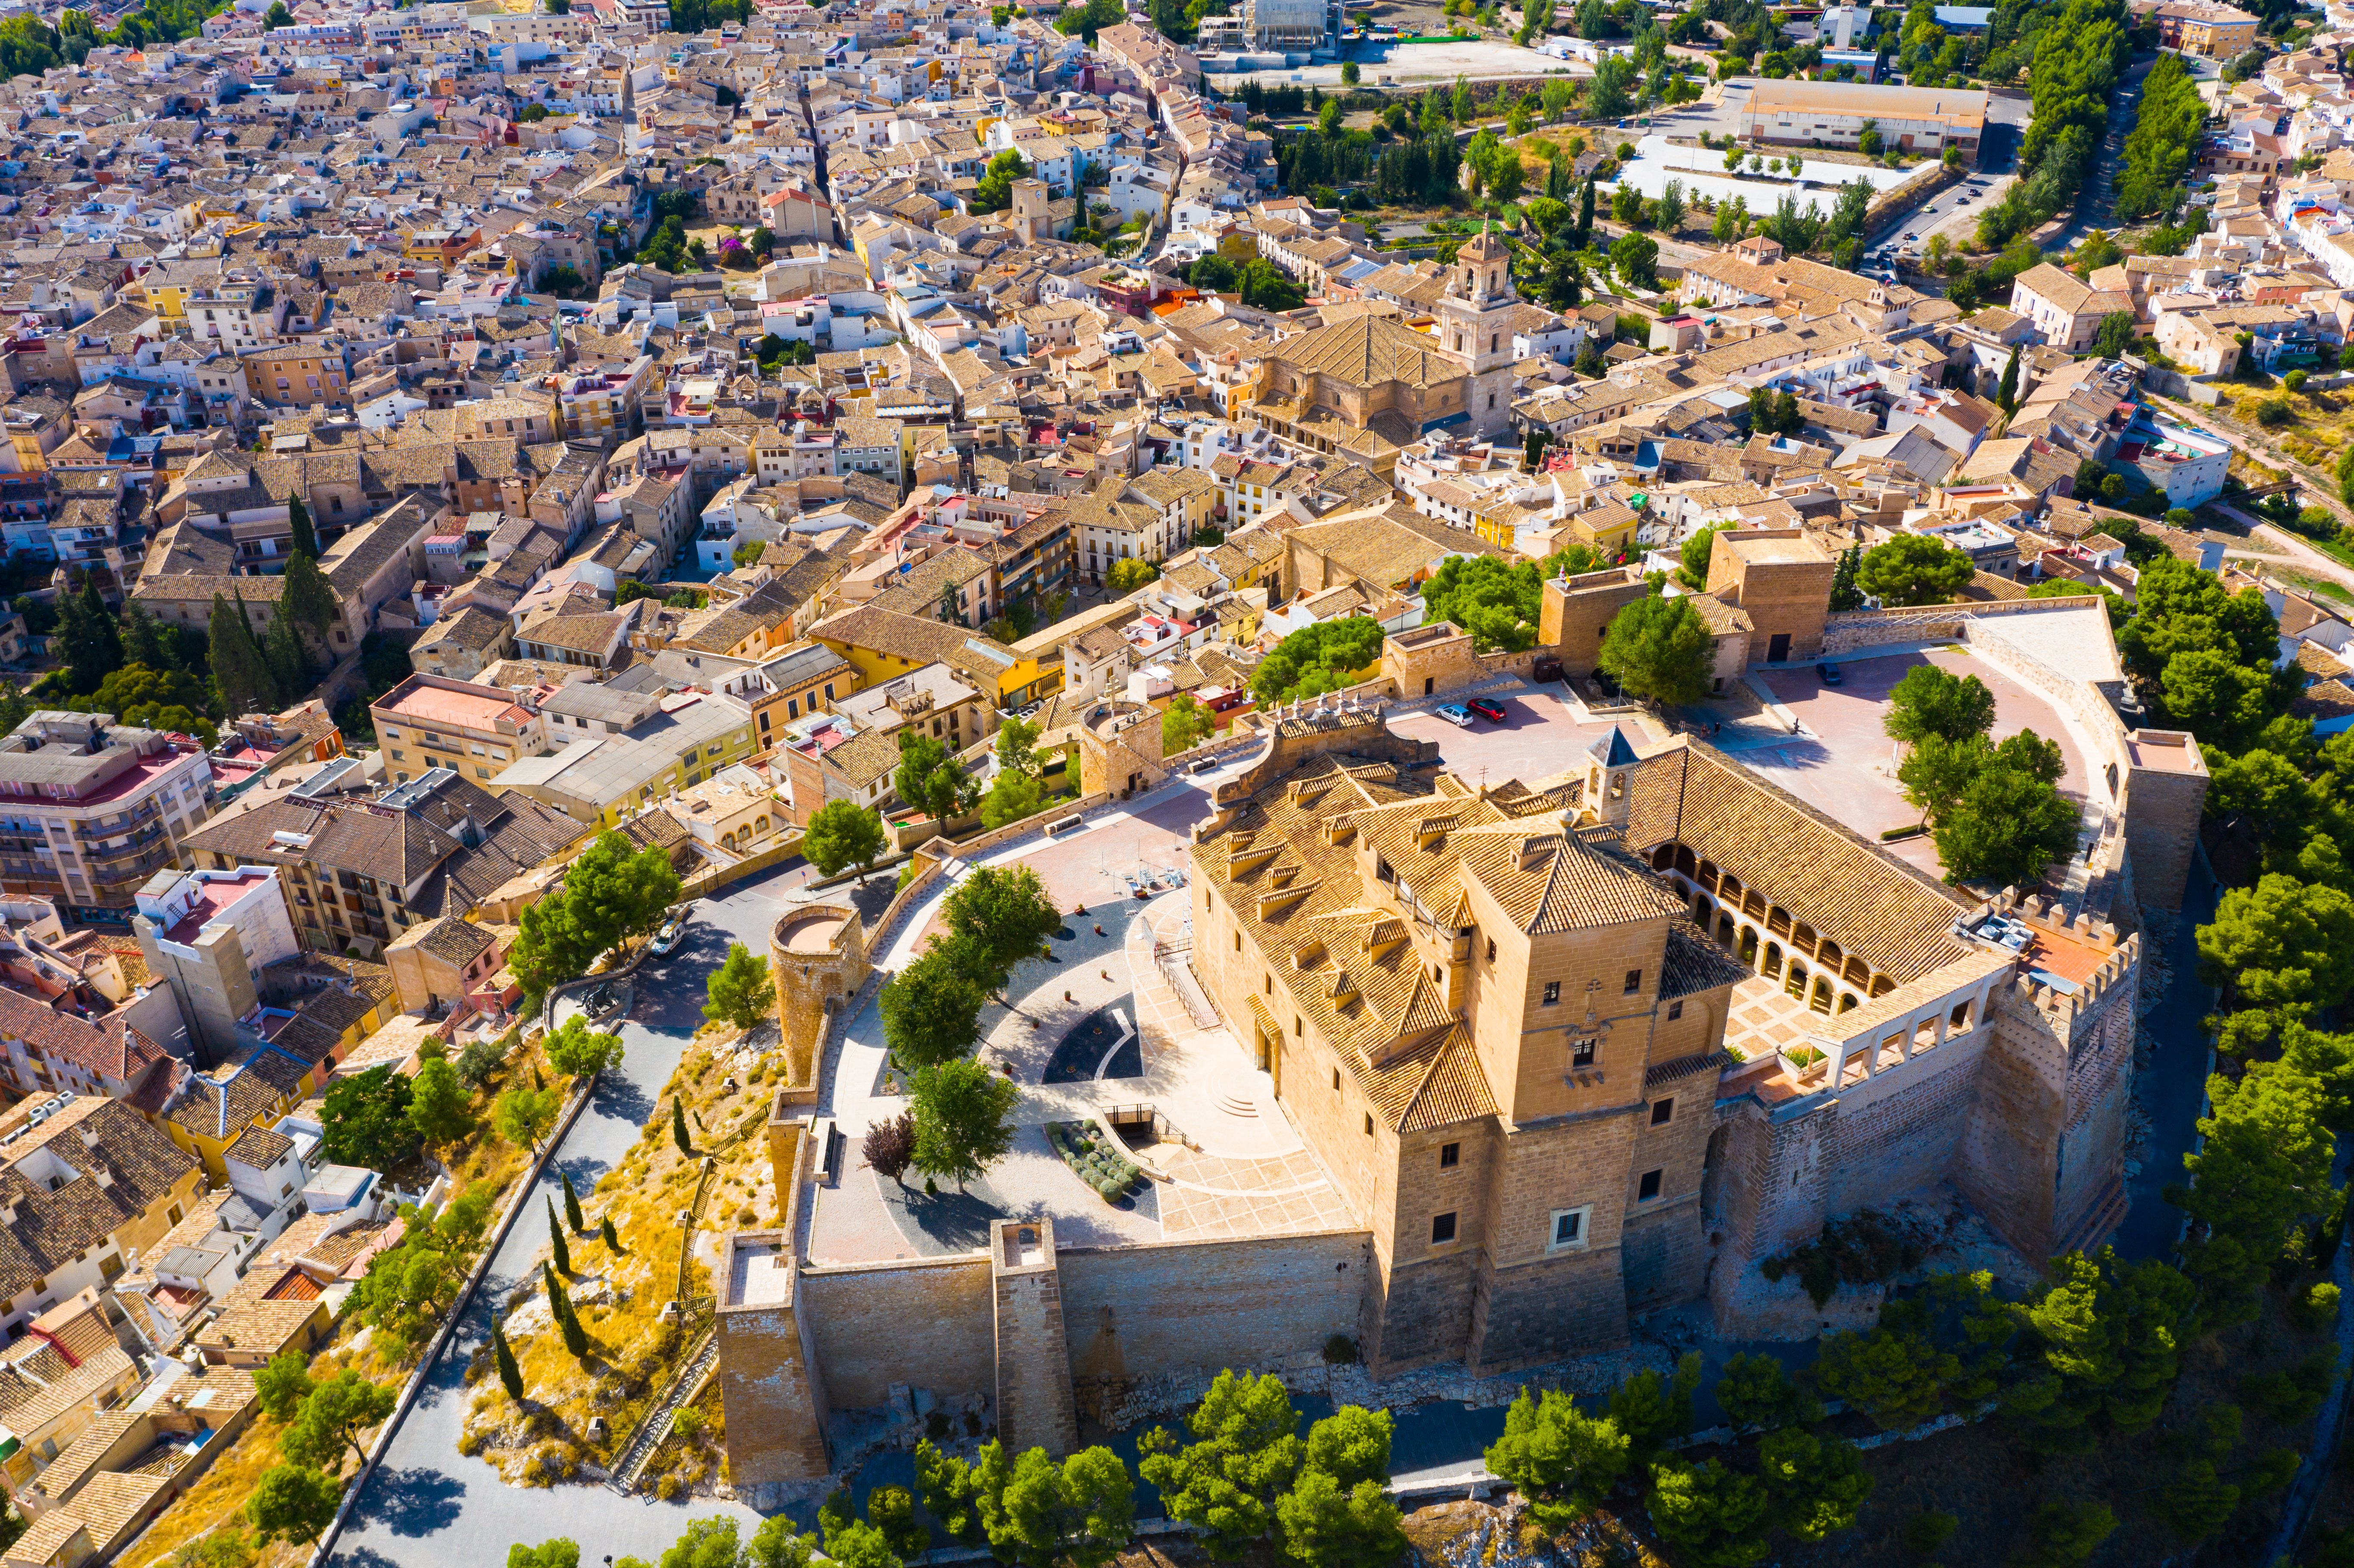 Region of Murcia: The Beauty of the Extraordinary